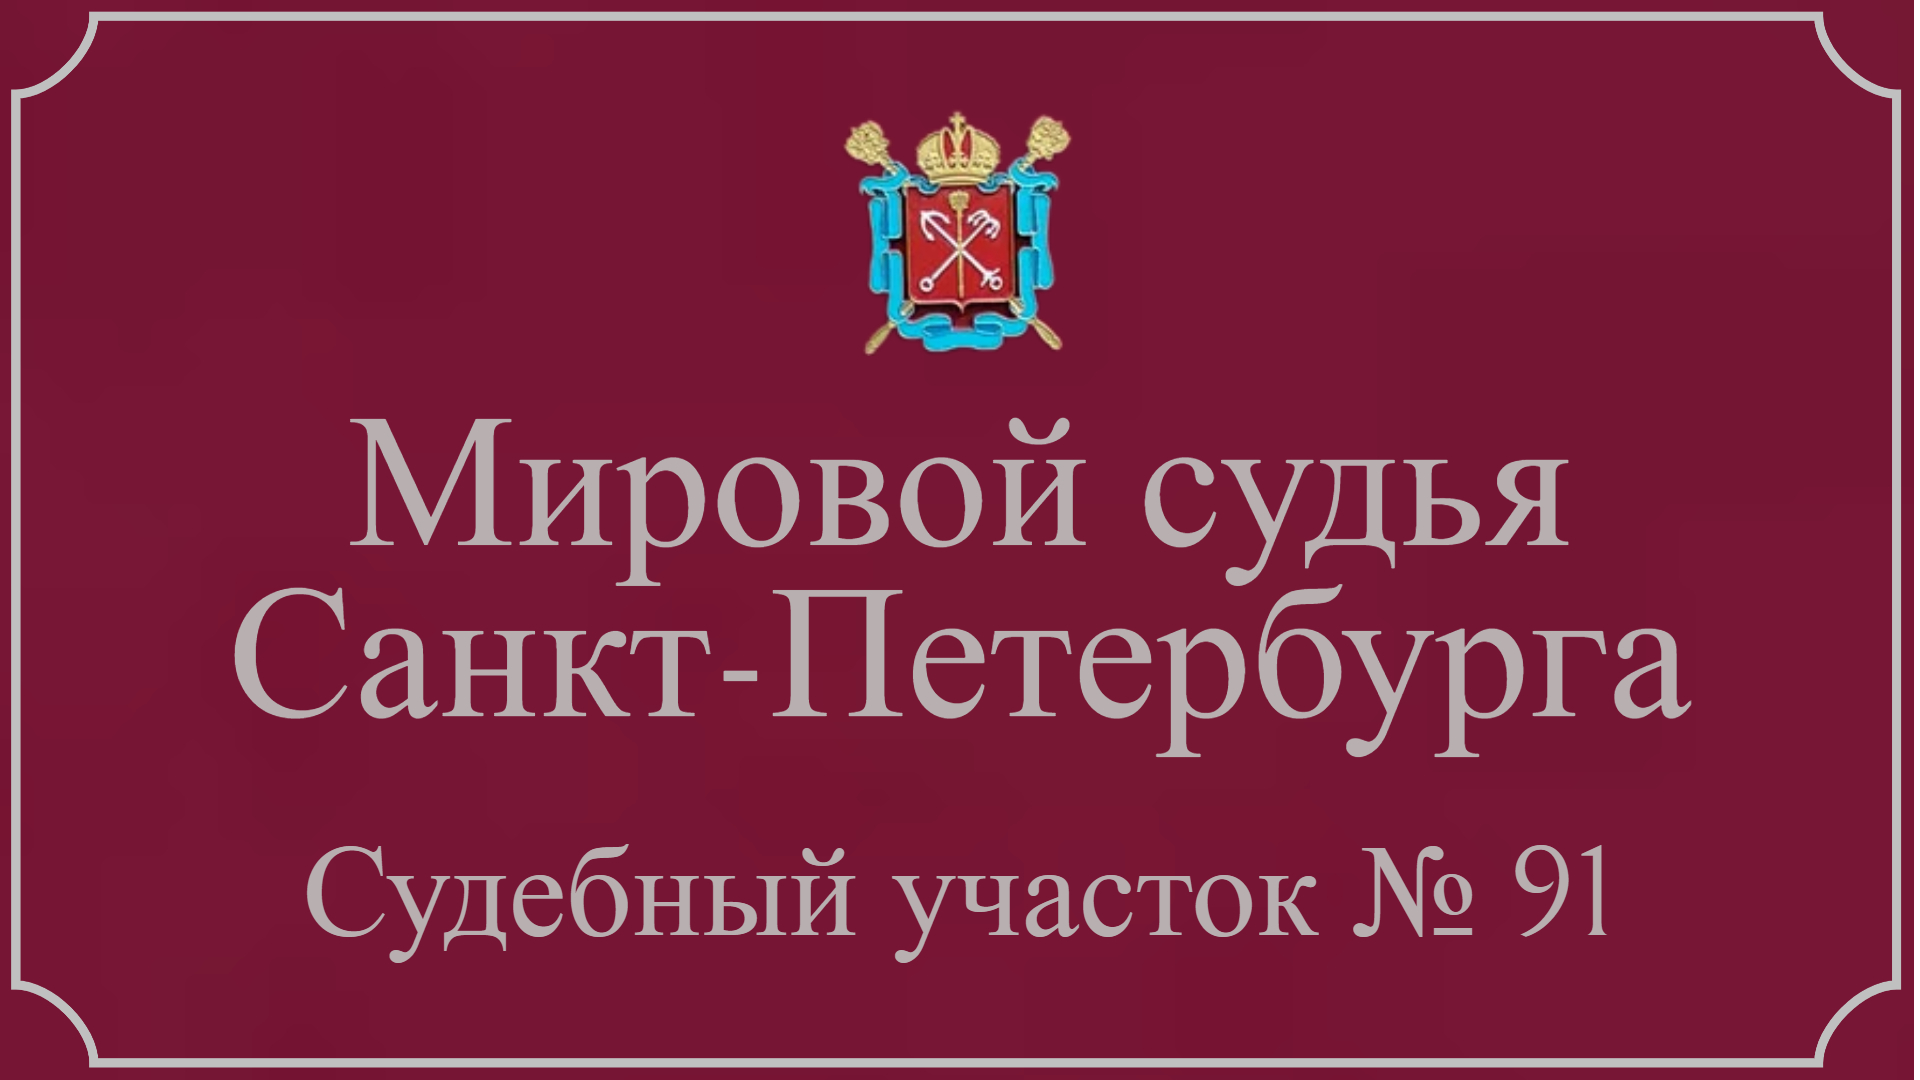 Информация по 91 судебному участку в Санкт-Петербурге.